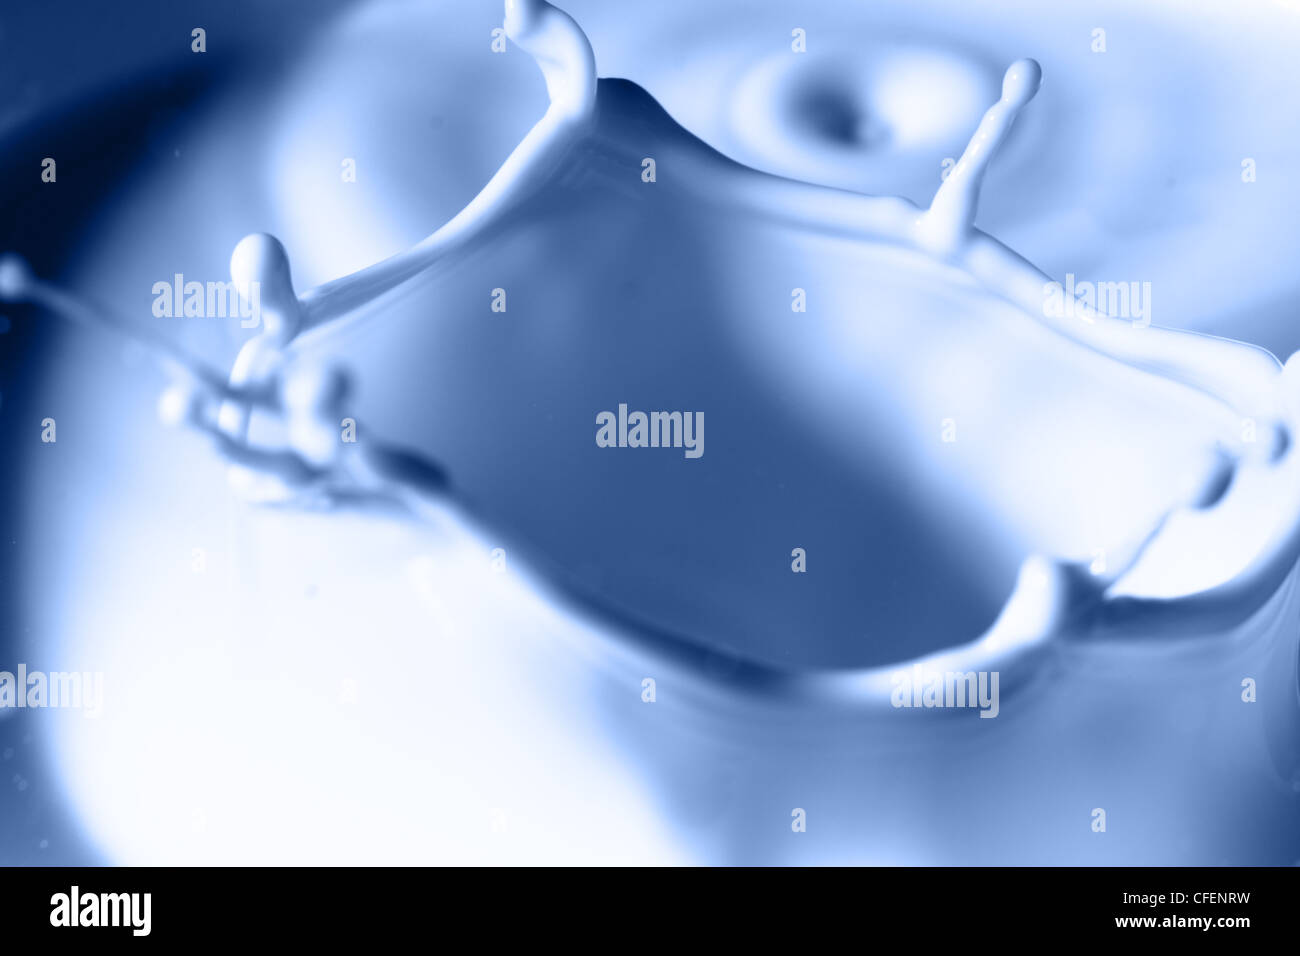 https://c8.alamy.com/comp/CFENRW/liquid-splash-macro-toned-in-blue-color-CFENRW.jpg